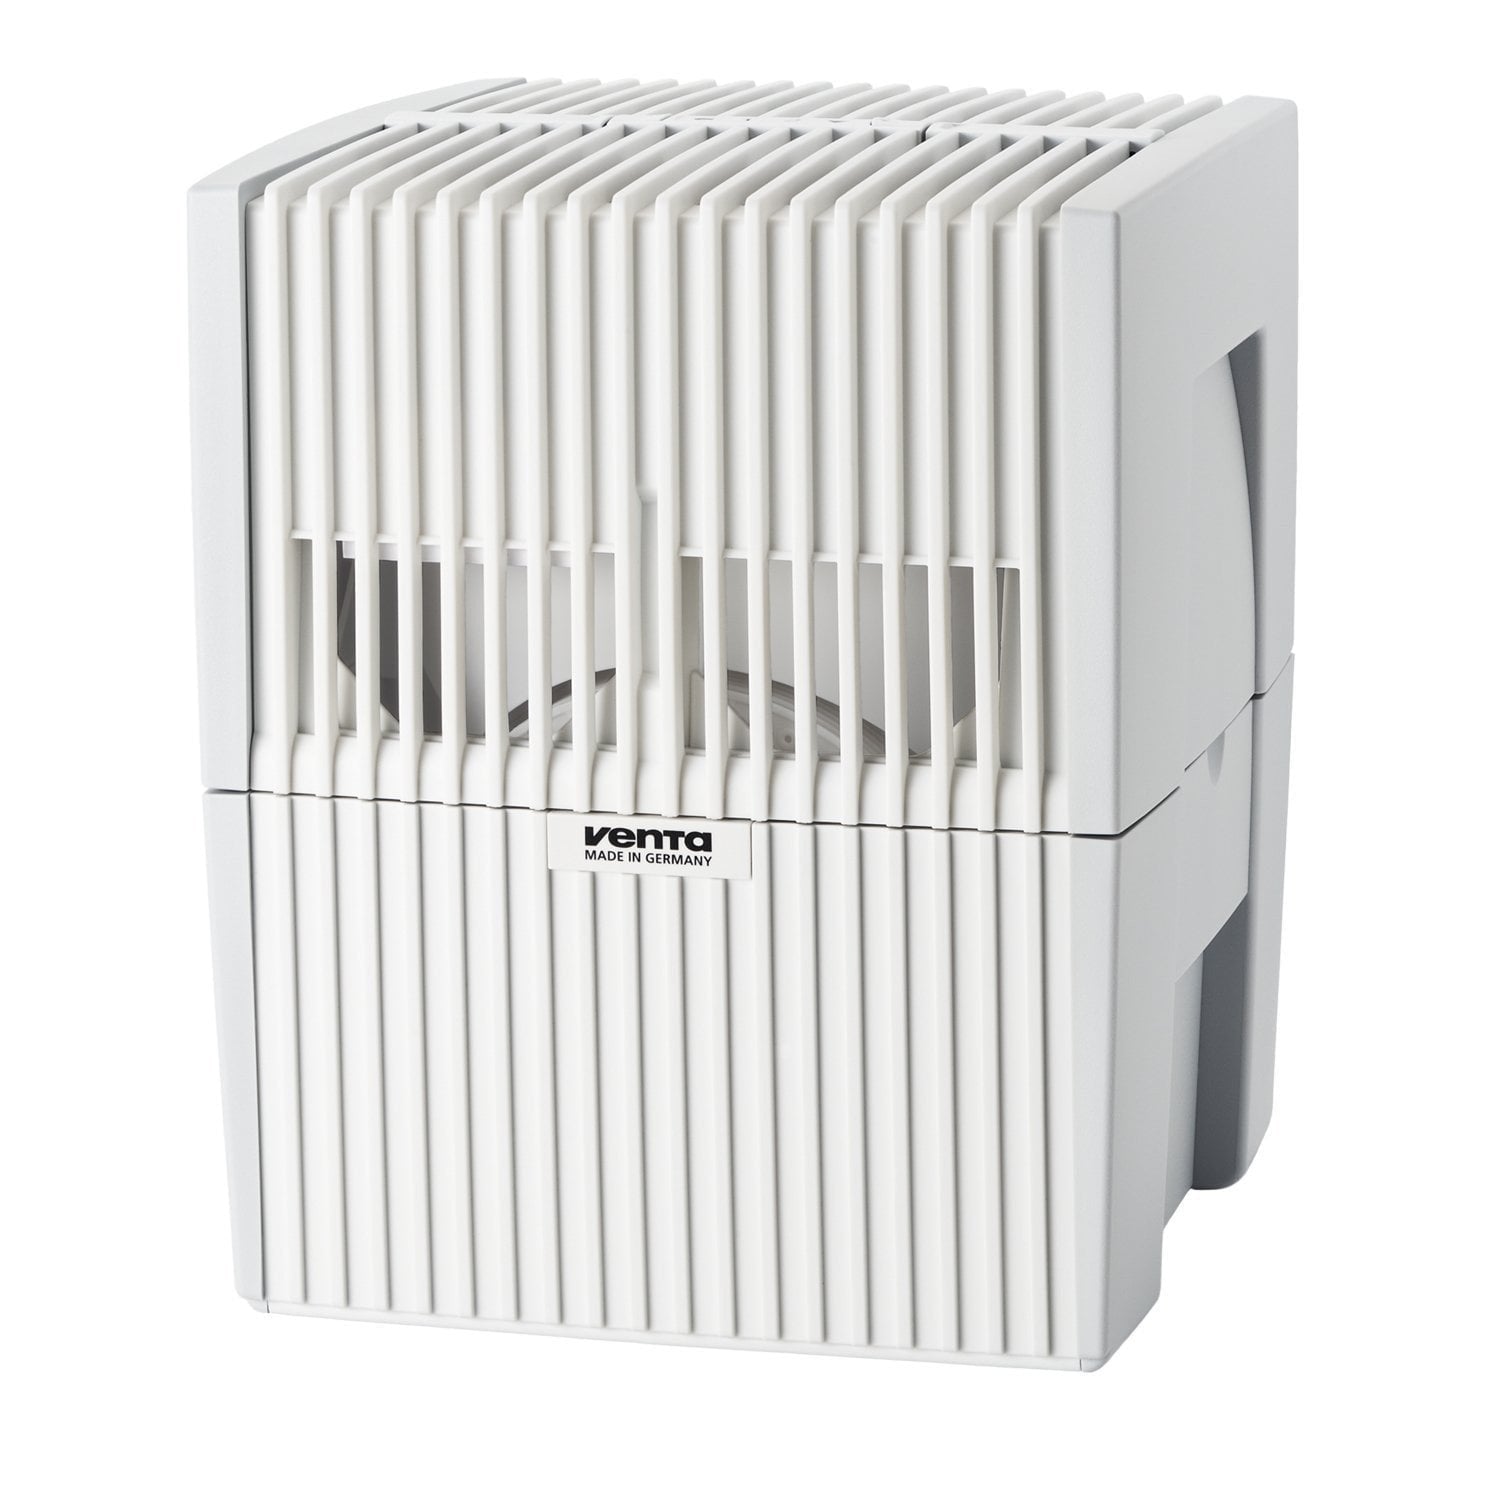 Venta Airwasher LW15 Air Purifier & Humidifier - White